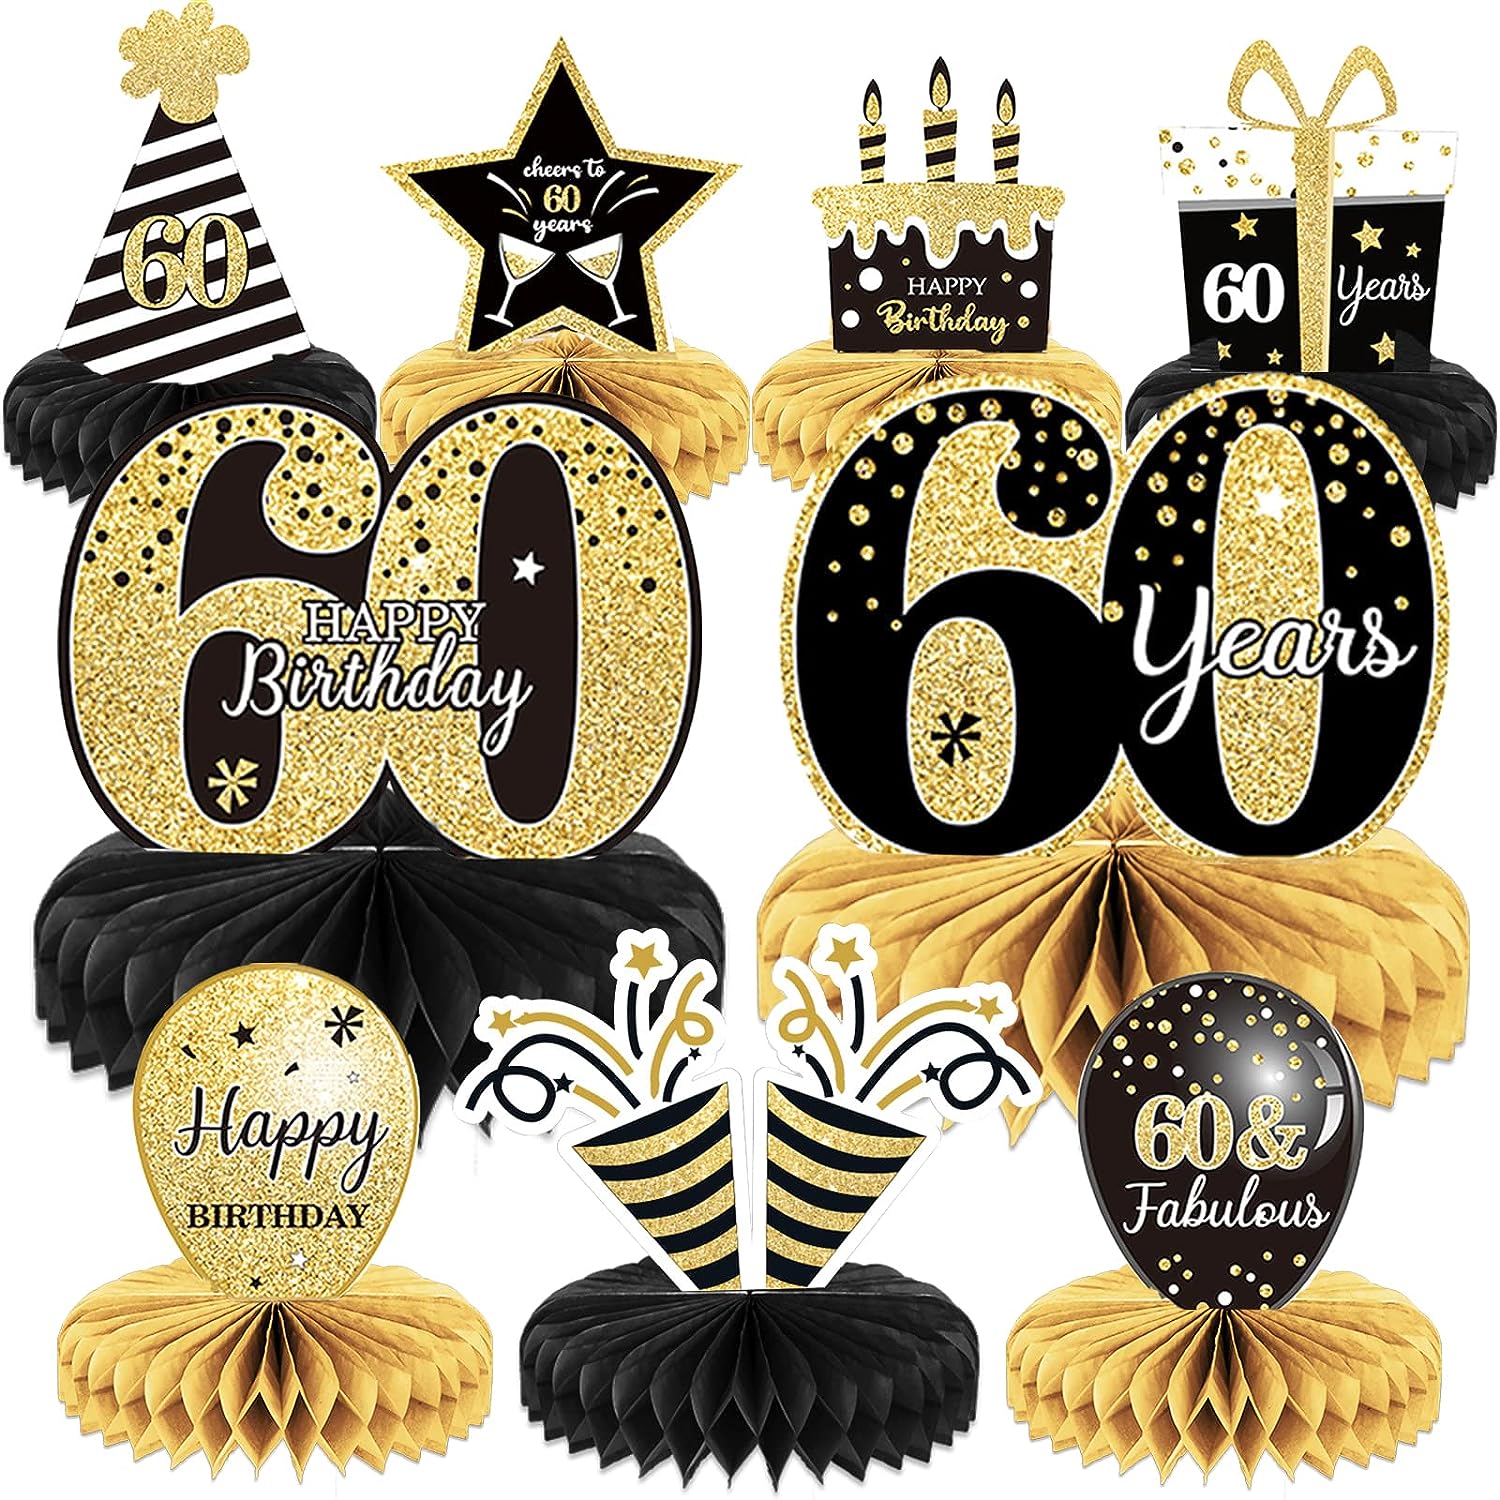  Decoraciones de 60 cumpleaños azul marino para hombres y mujeres,  decoraciones azules y doradas para fiesta de cumpleaños 60 color azul  marino, telón de fondo de cumpleaños número 60, globos de 